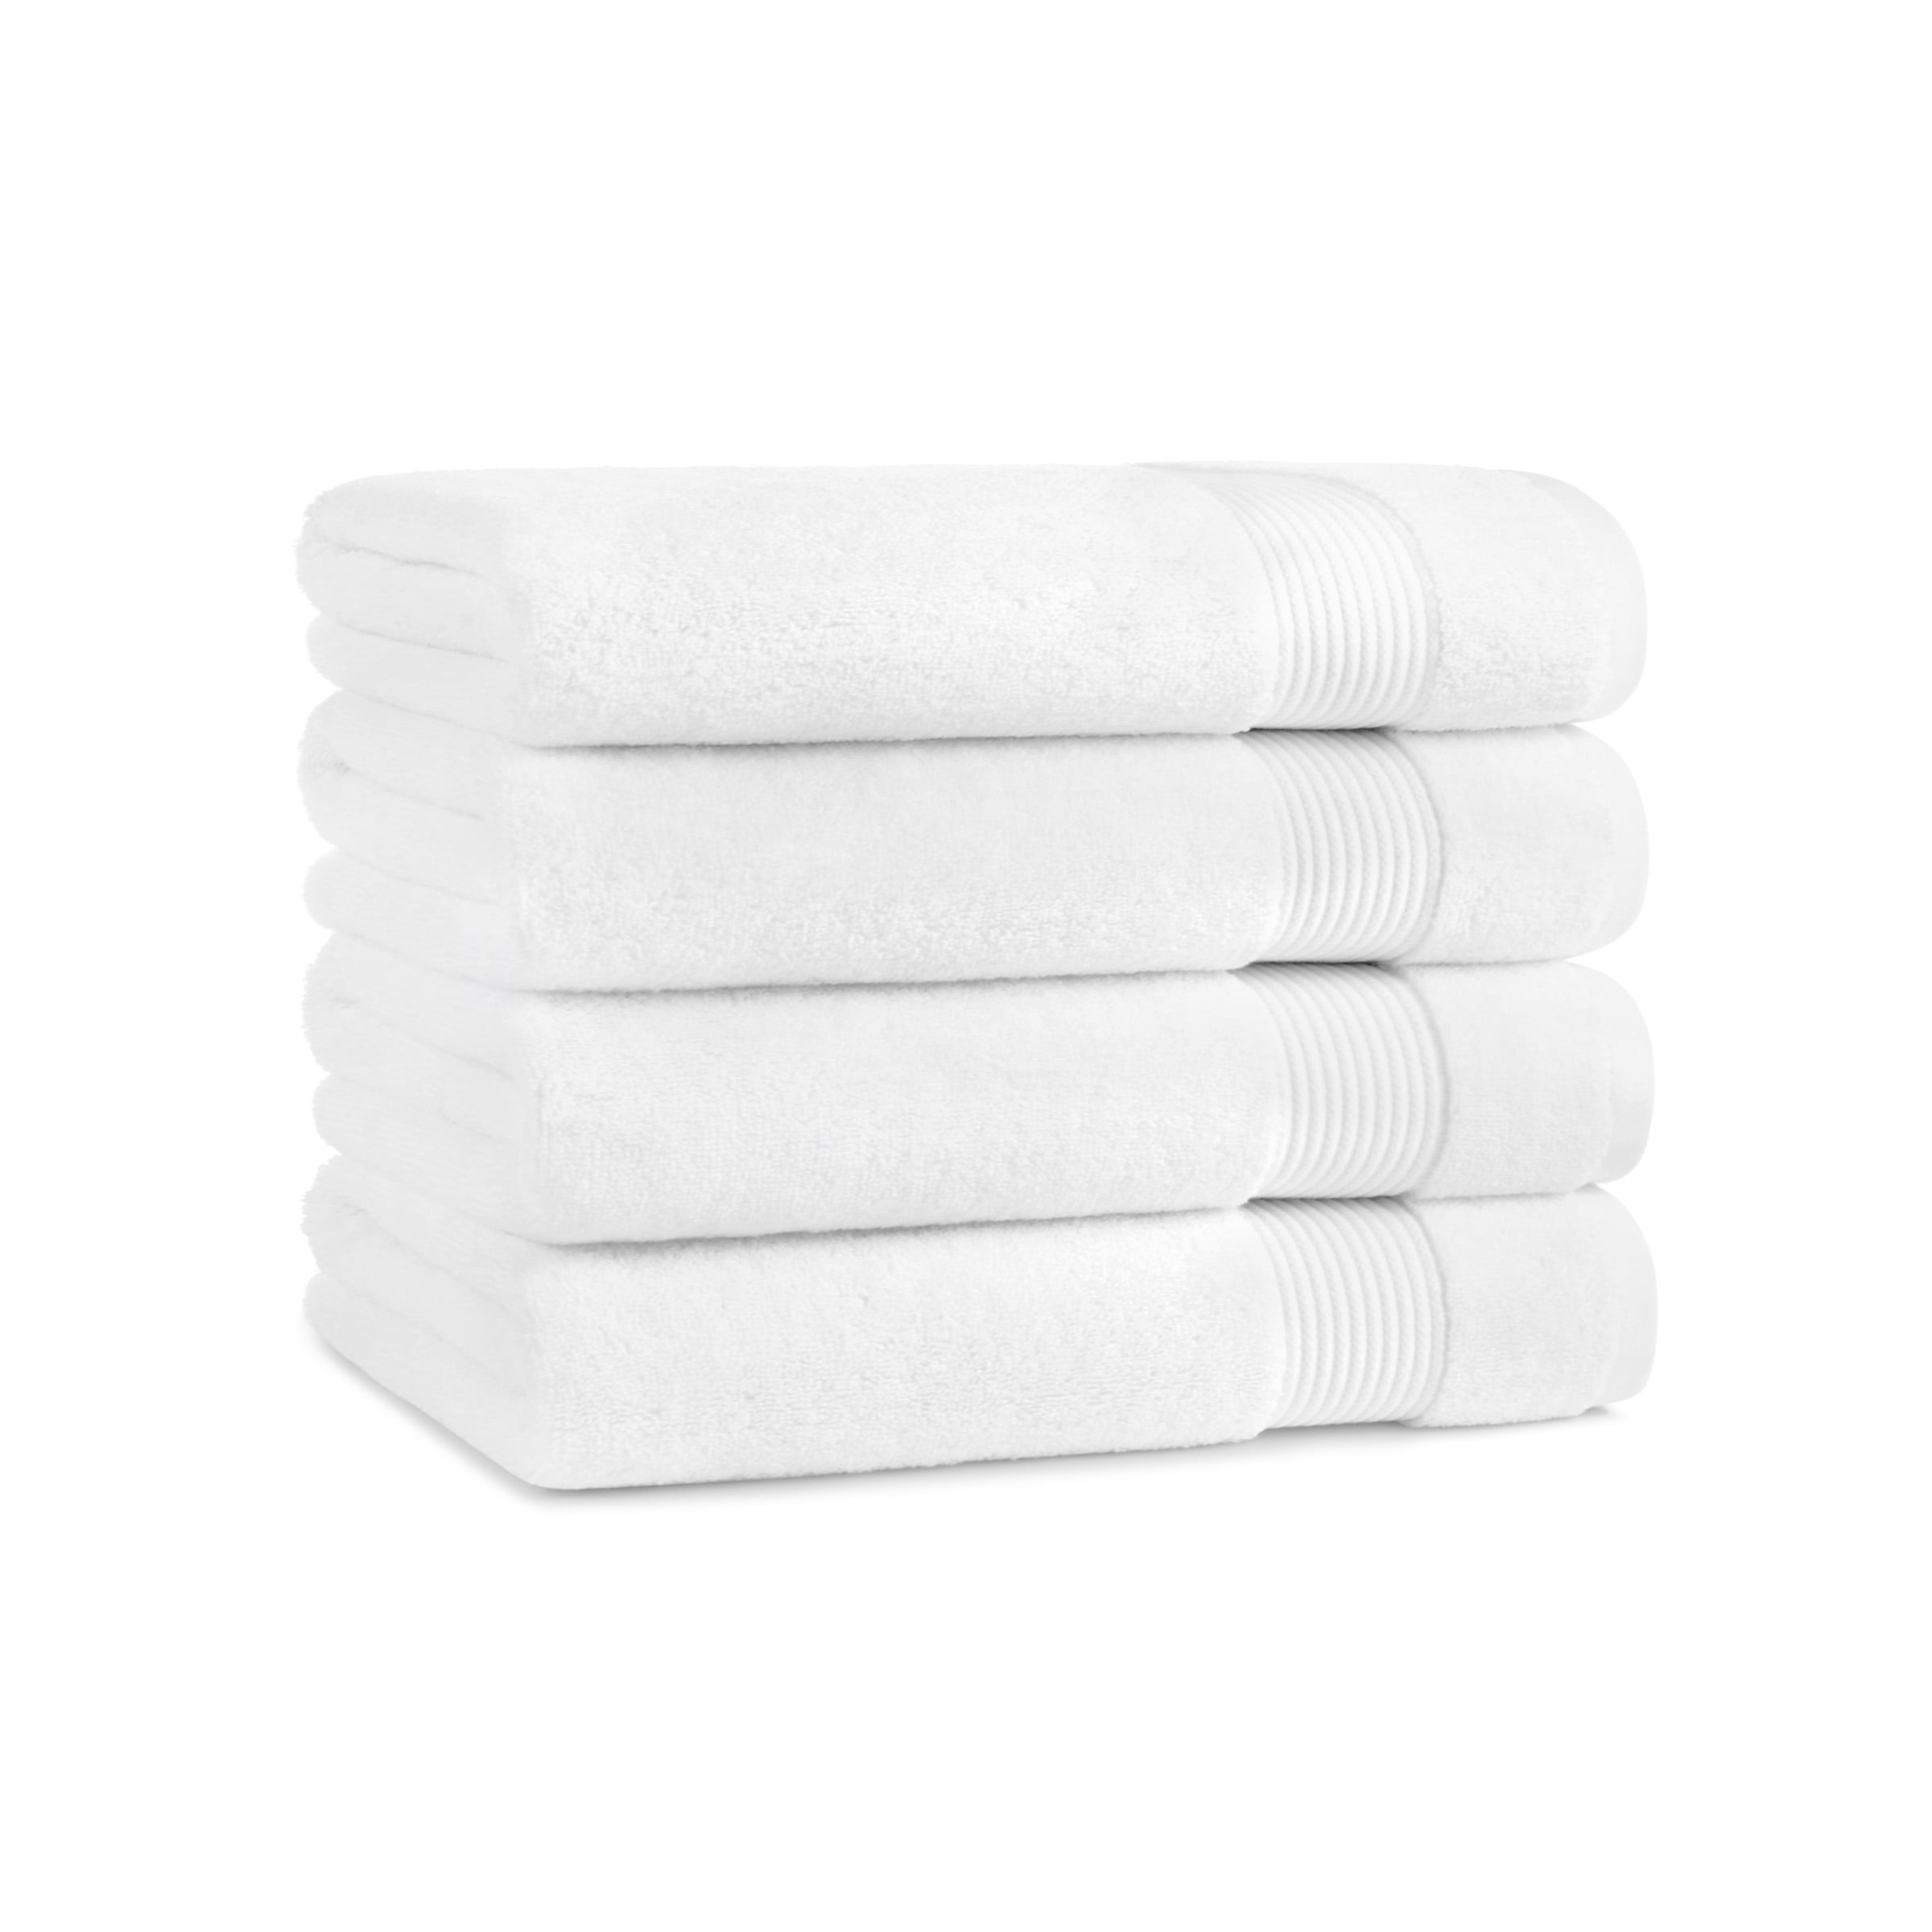 BELIZZI HOME Elvana Home 8 Piece Towel Set 100% Ring Spun cotton, 2 Bath  Towels